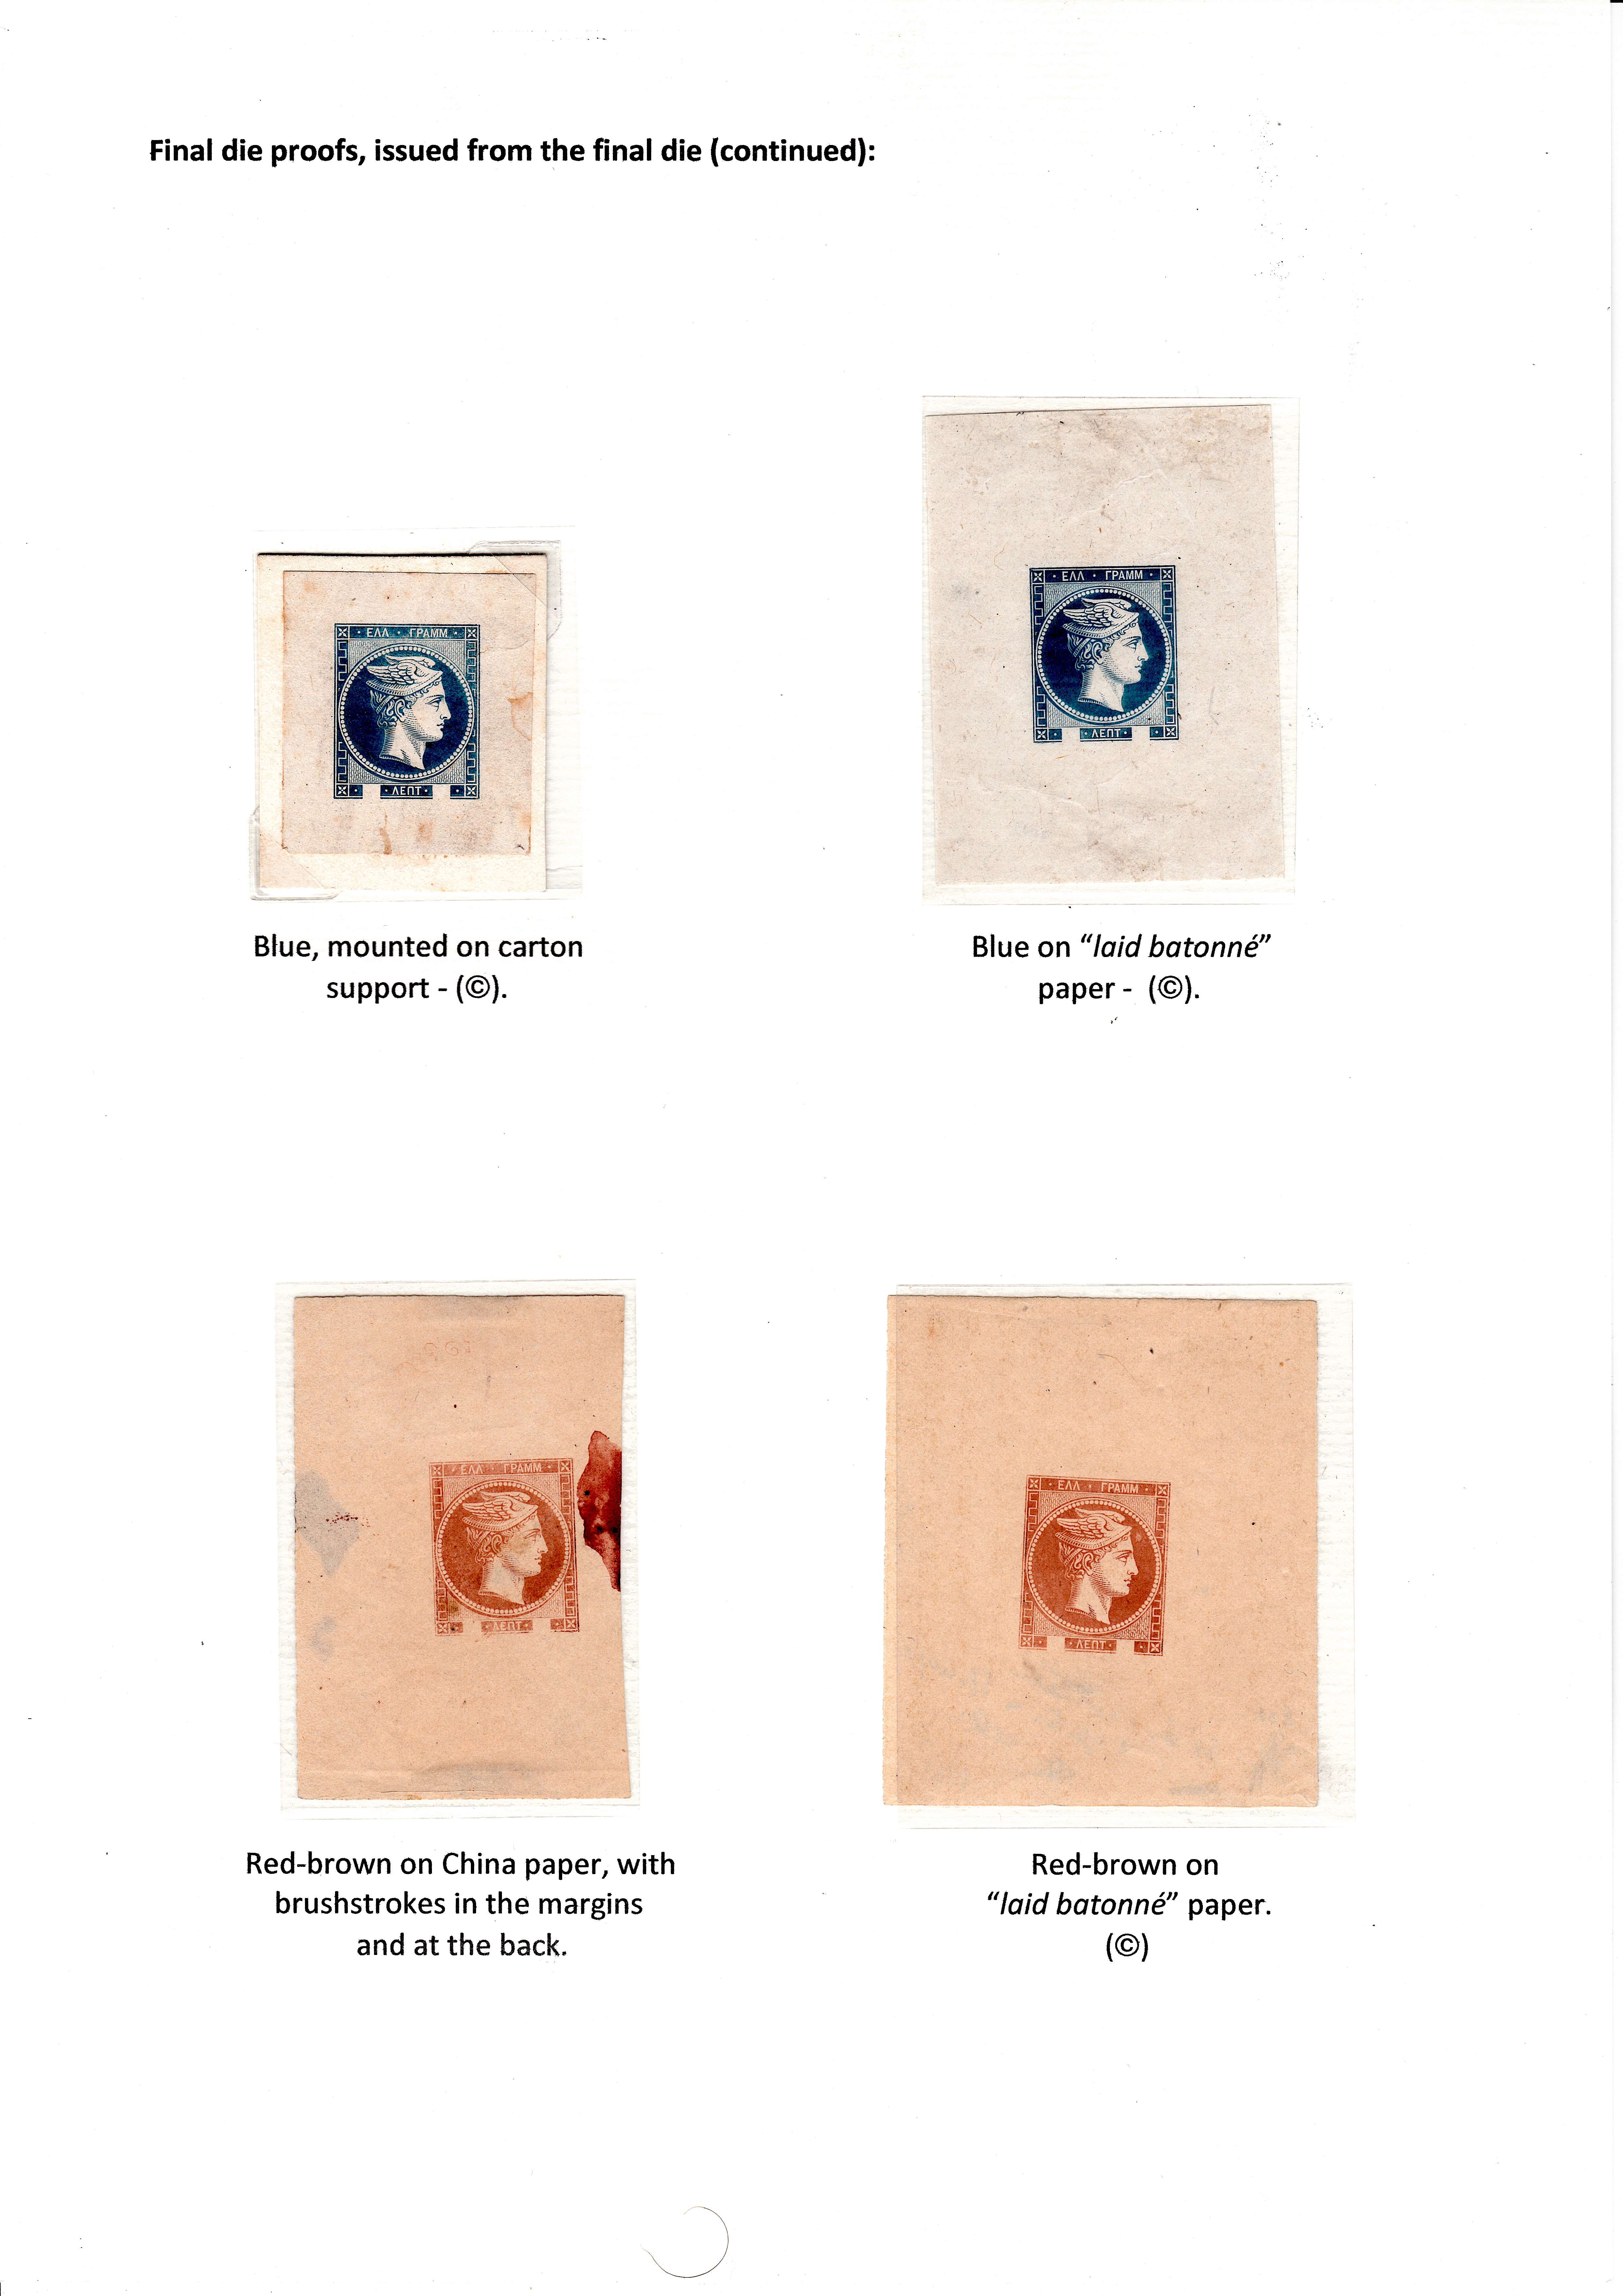 La fabrication et l���utilisation postale des tirages de Paris de la grosse t��te d���Herm��s de Gr��ce��� p. 10